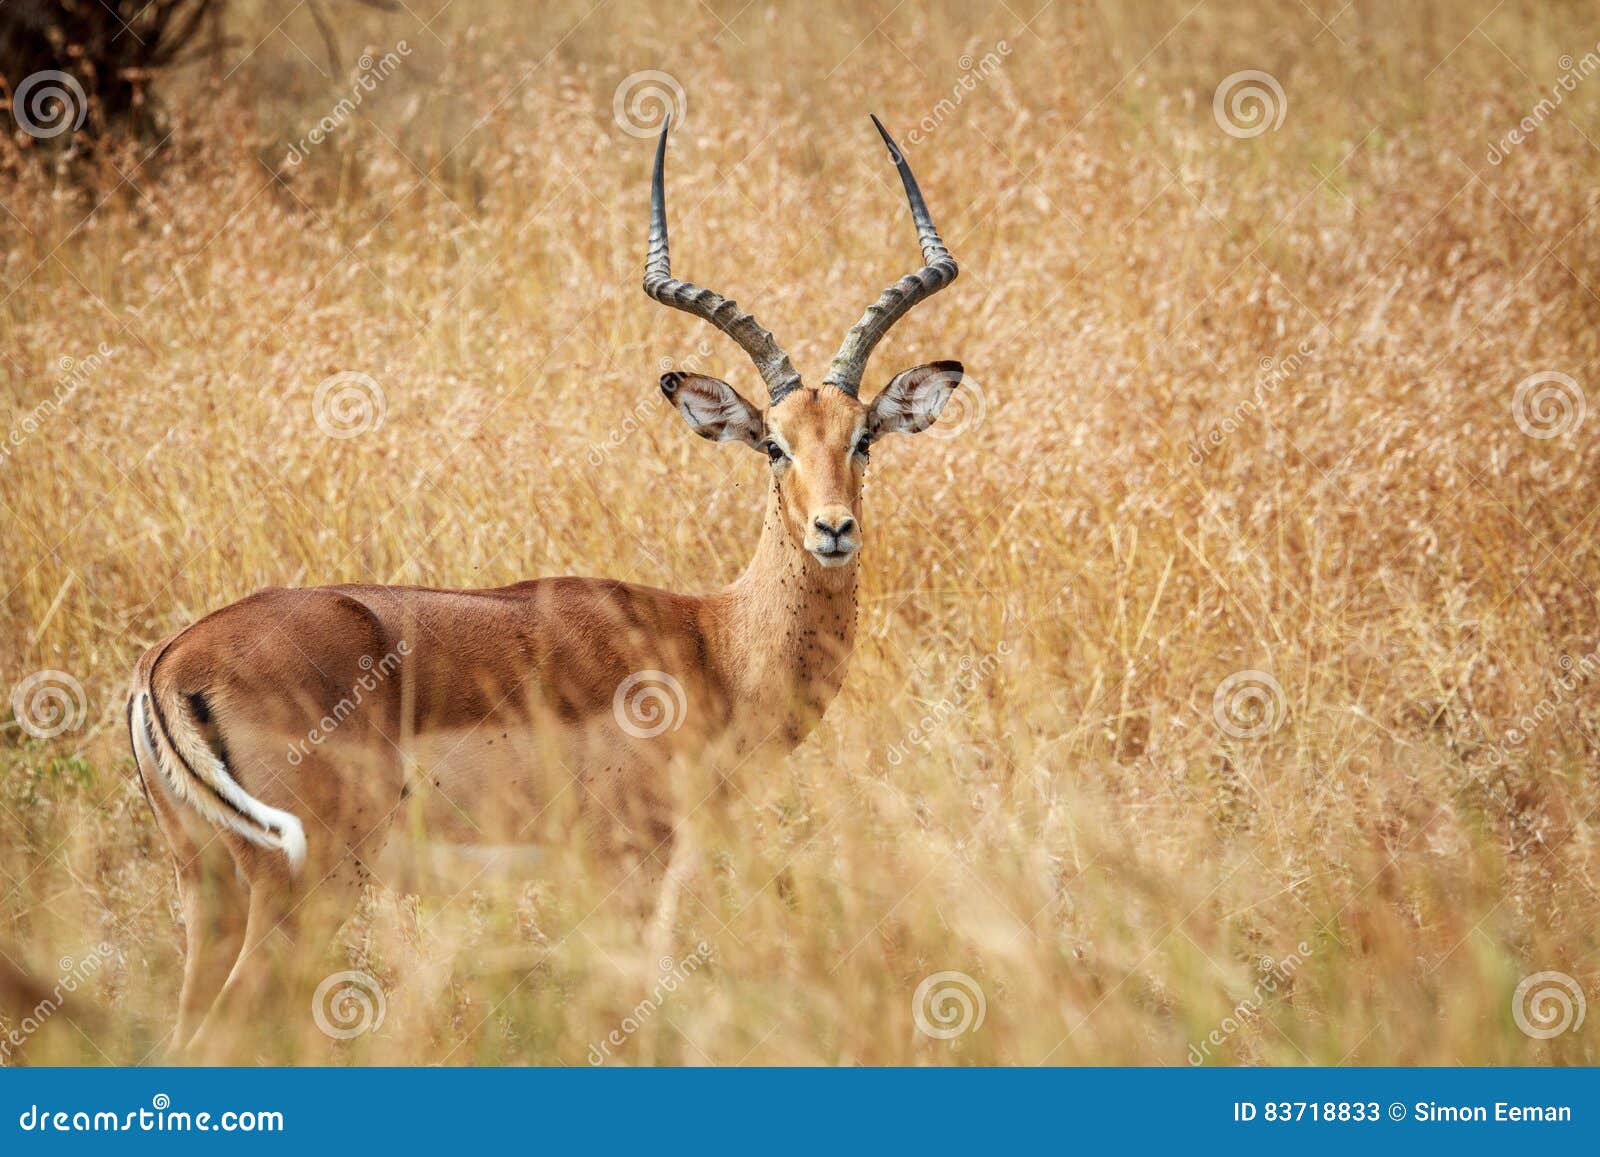 Männliche Impala, die an der Kamera die Hauptrolle spielt. Männliche Impala, die an der Kamera im Nationalpark Kruger, Südafrika die Hauptrolle spielt